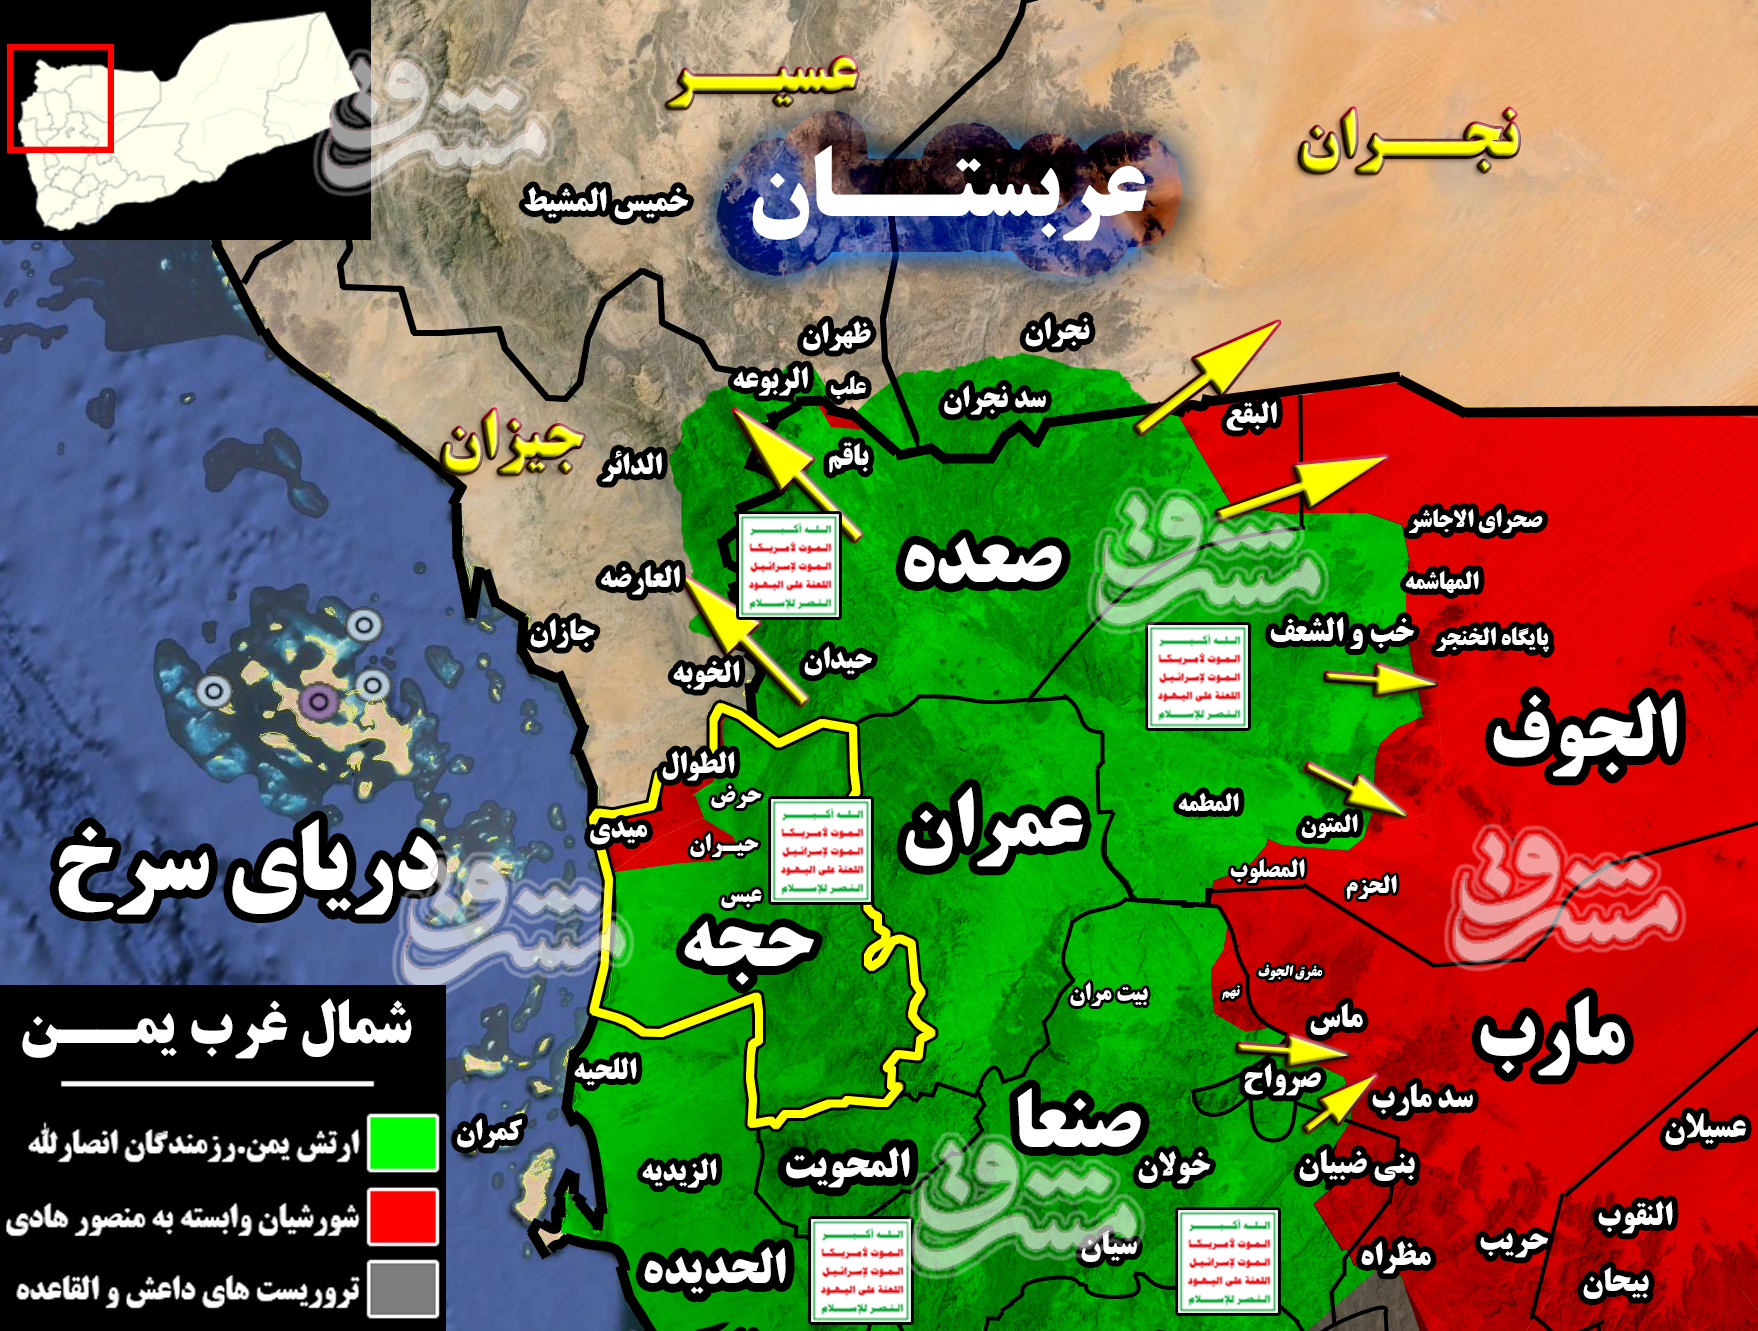 نقشه یمن